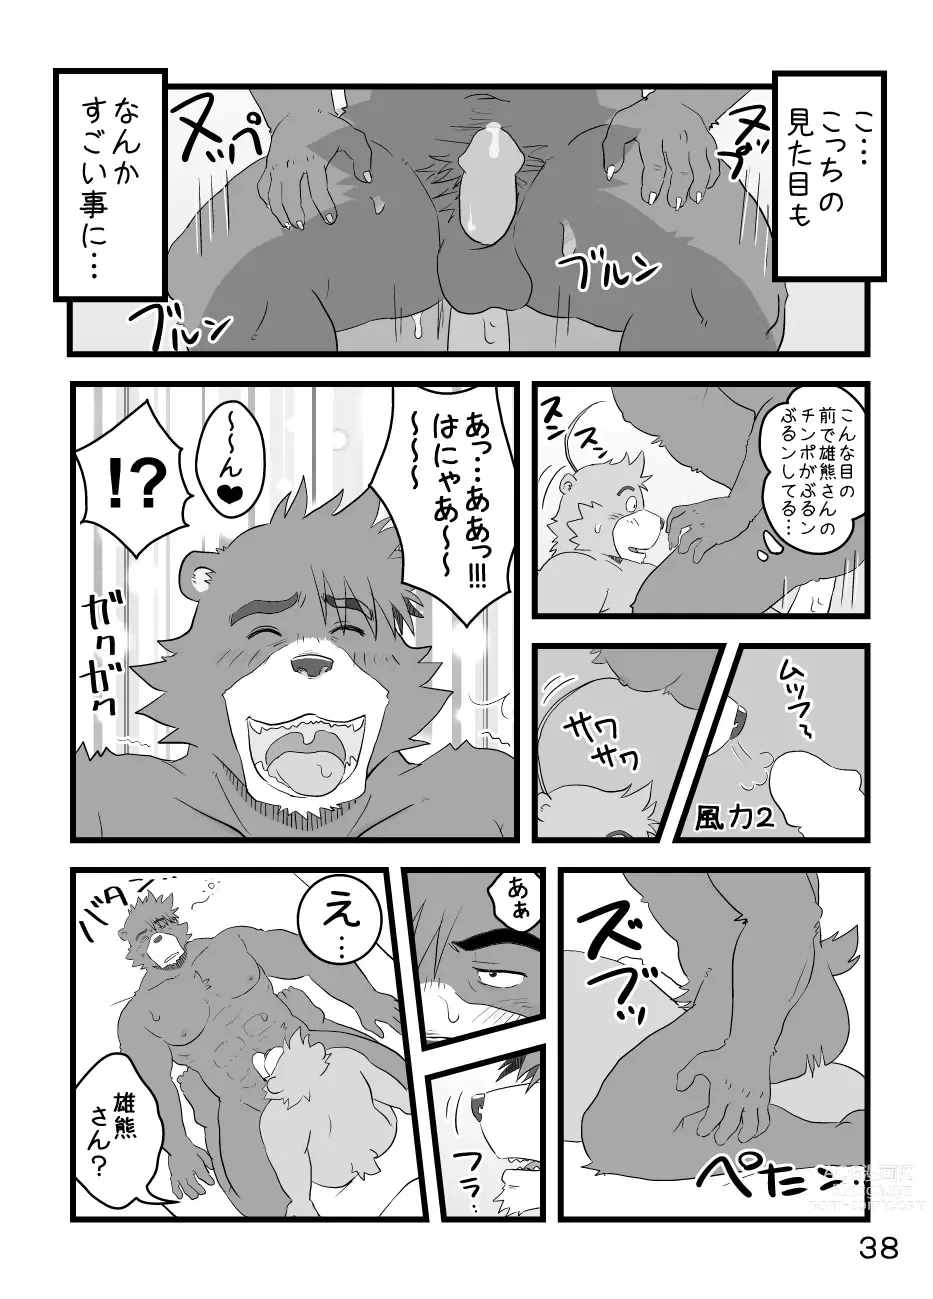 Page 41 of doujinshi Boku Wa Seigi Man